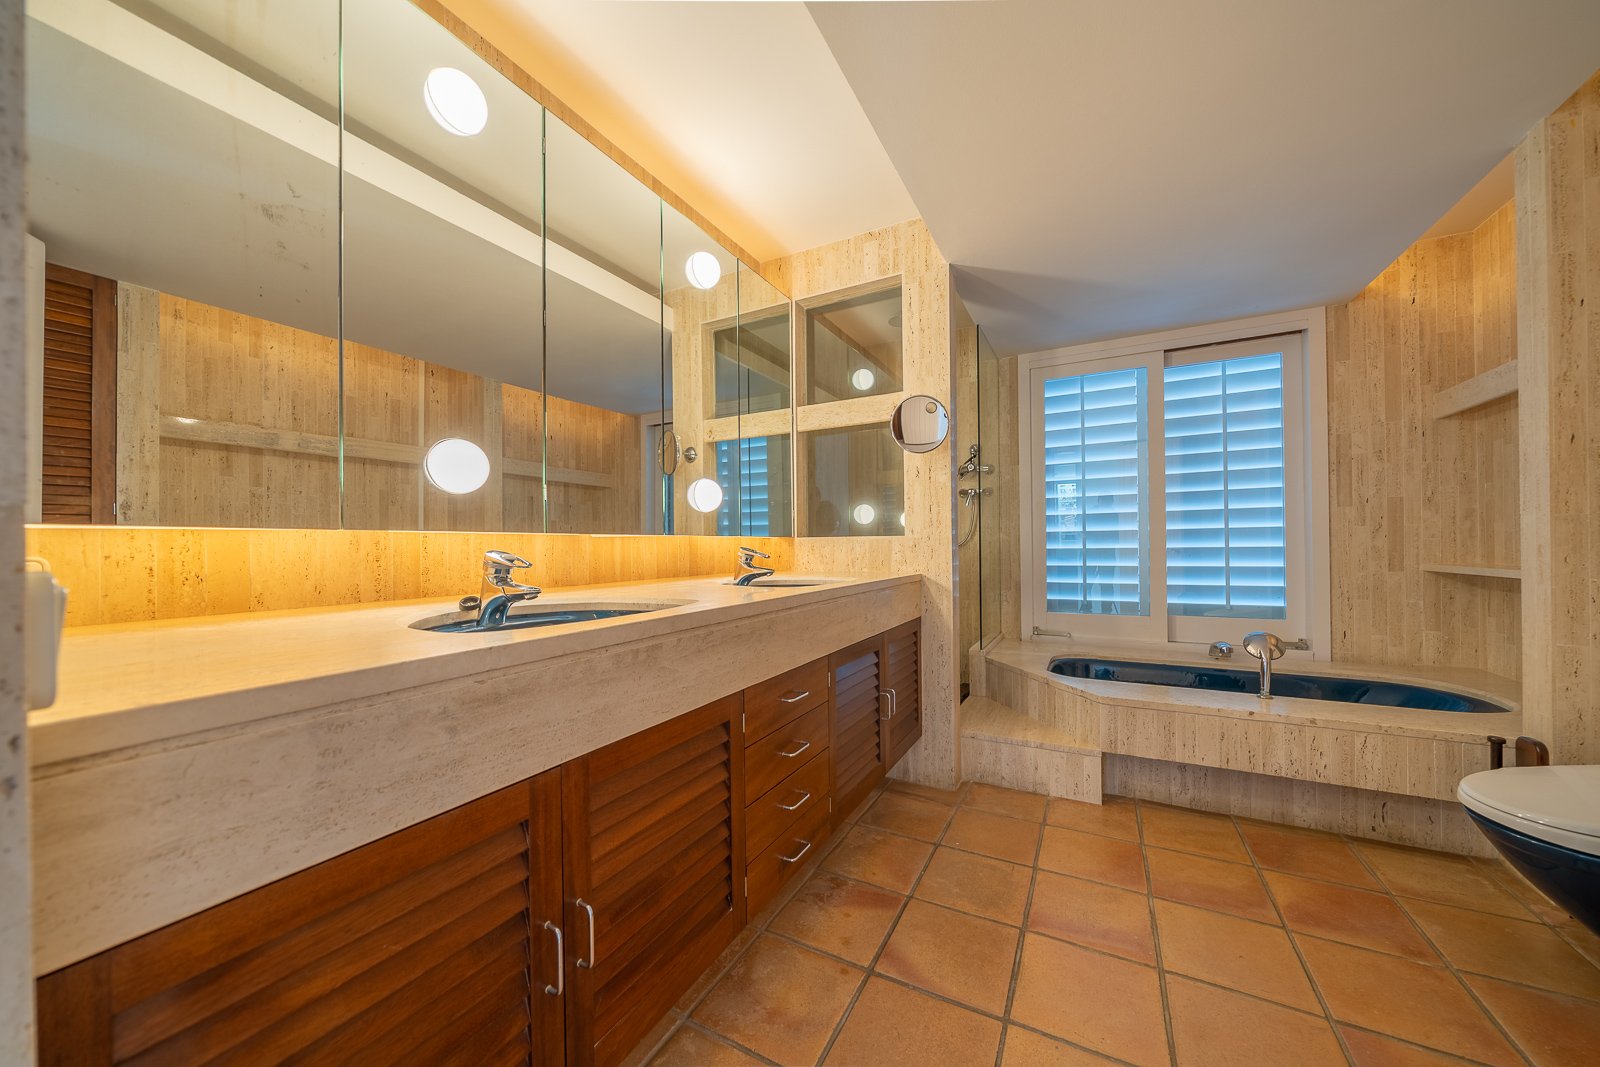 Luxury villa Homanie in Cadaqués, Spain with bathroom with bathtub 